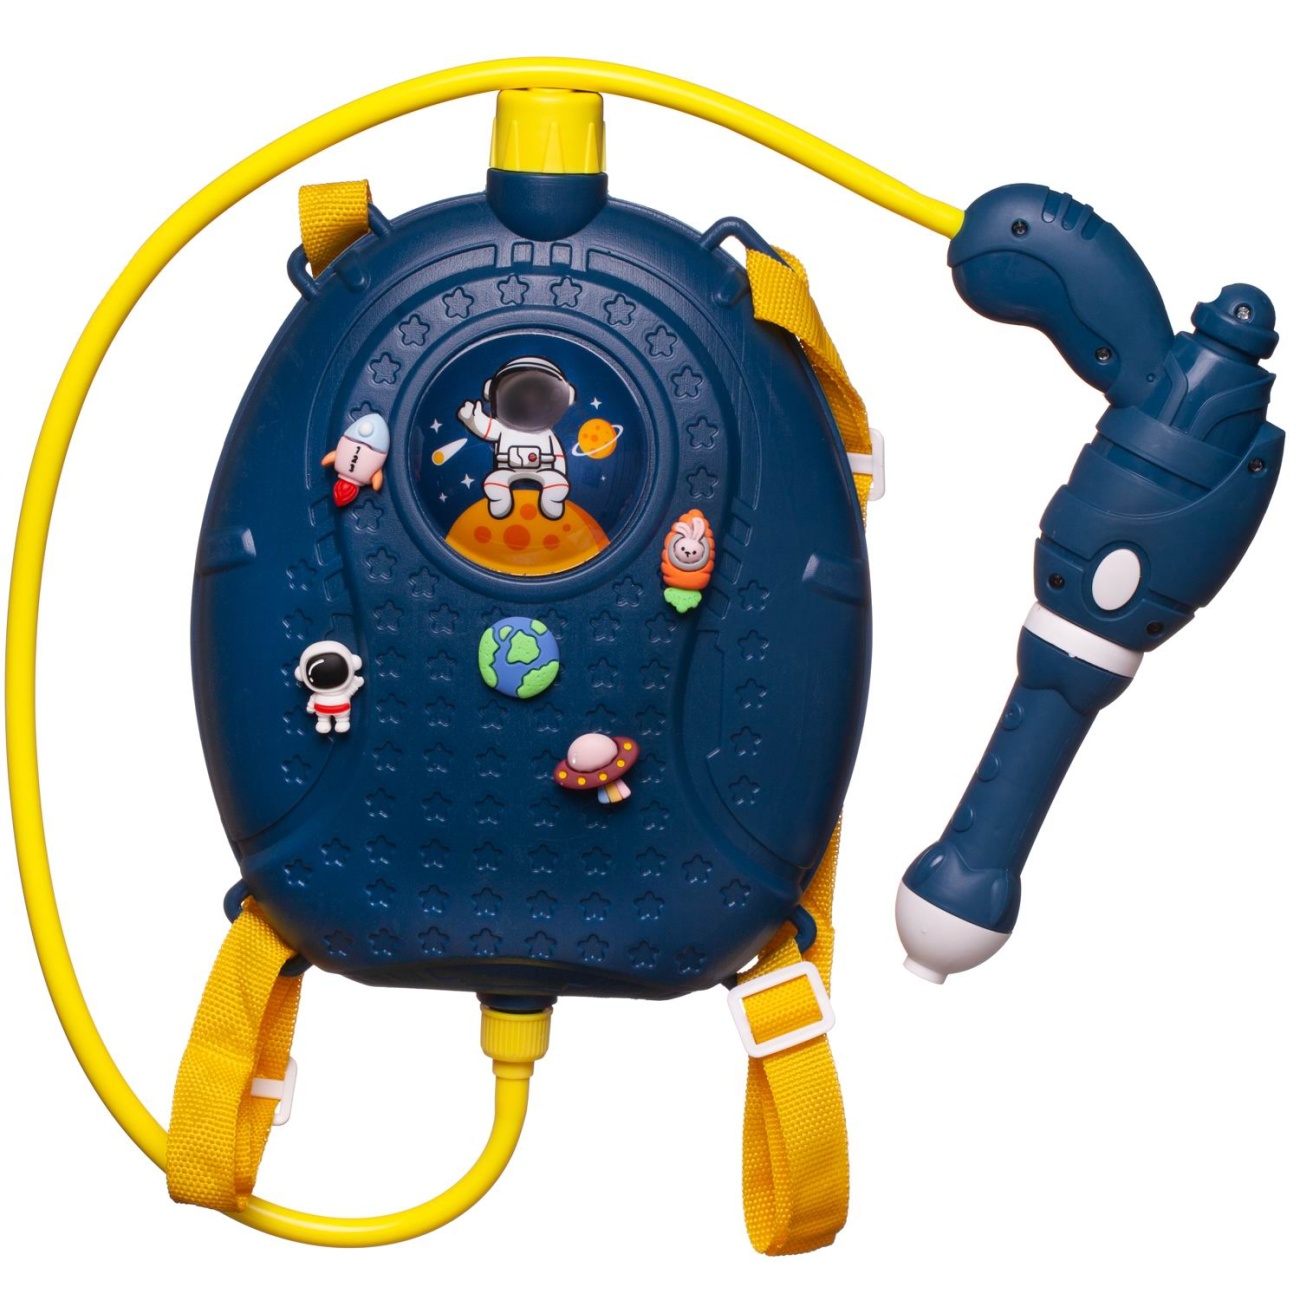 Бластер Junfa водный с рюкзачком-резервуаром Покорители космоса, объем 1500 мл WF-10545